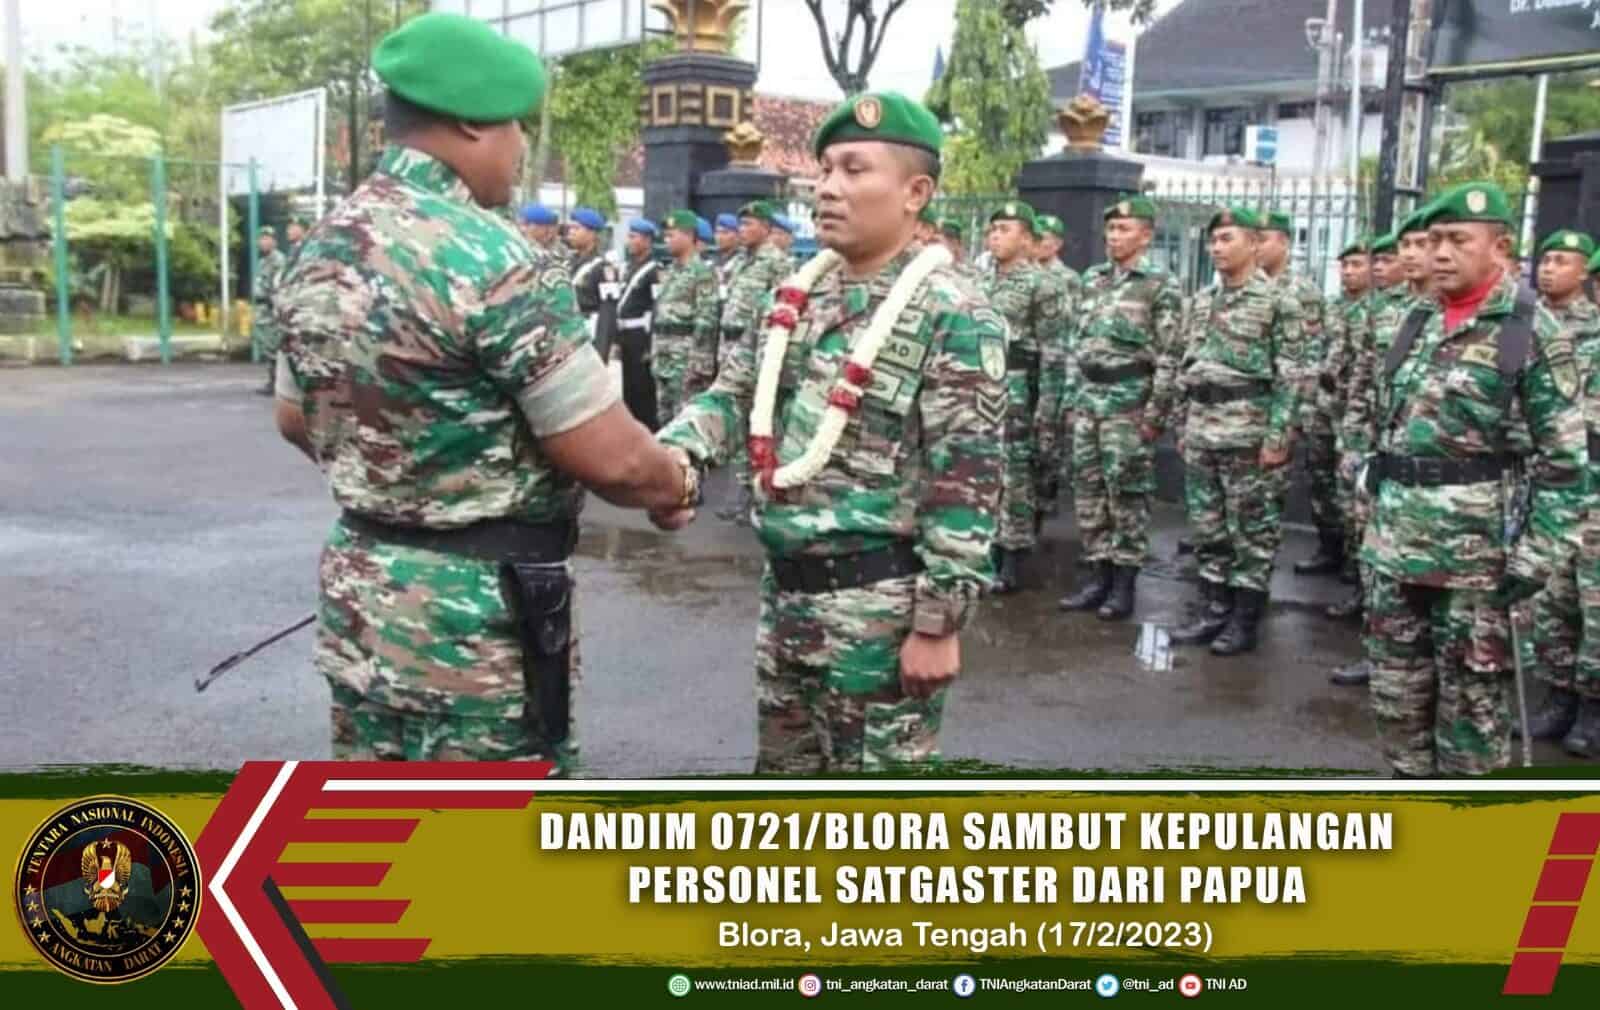 Dandim 0721/Blora Sambut Kepulangan Personel Satgaster dari Papua